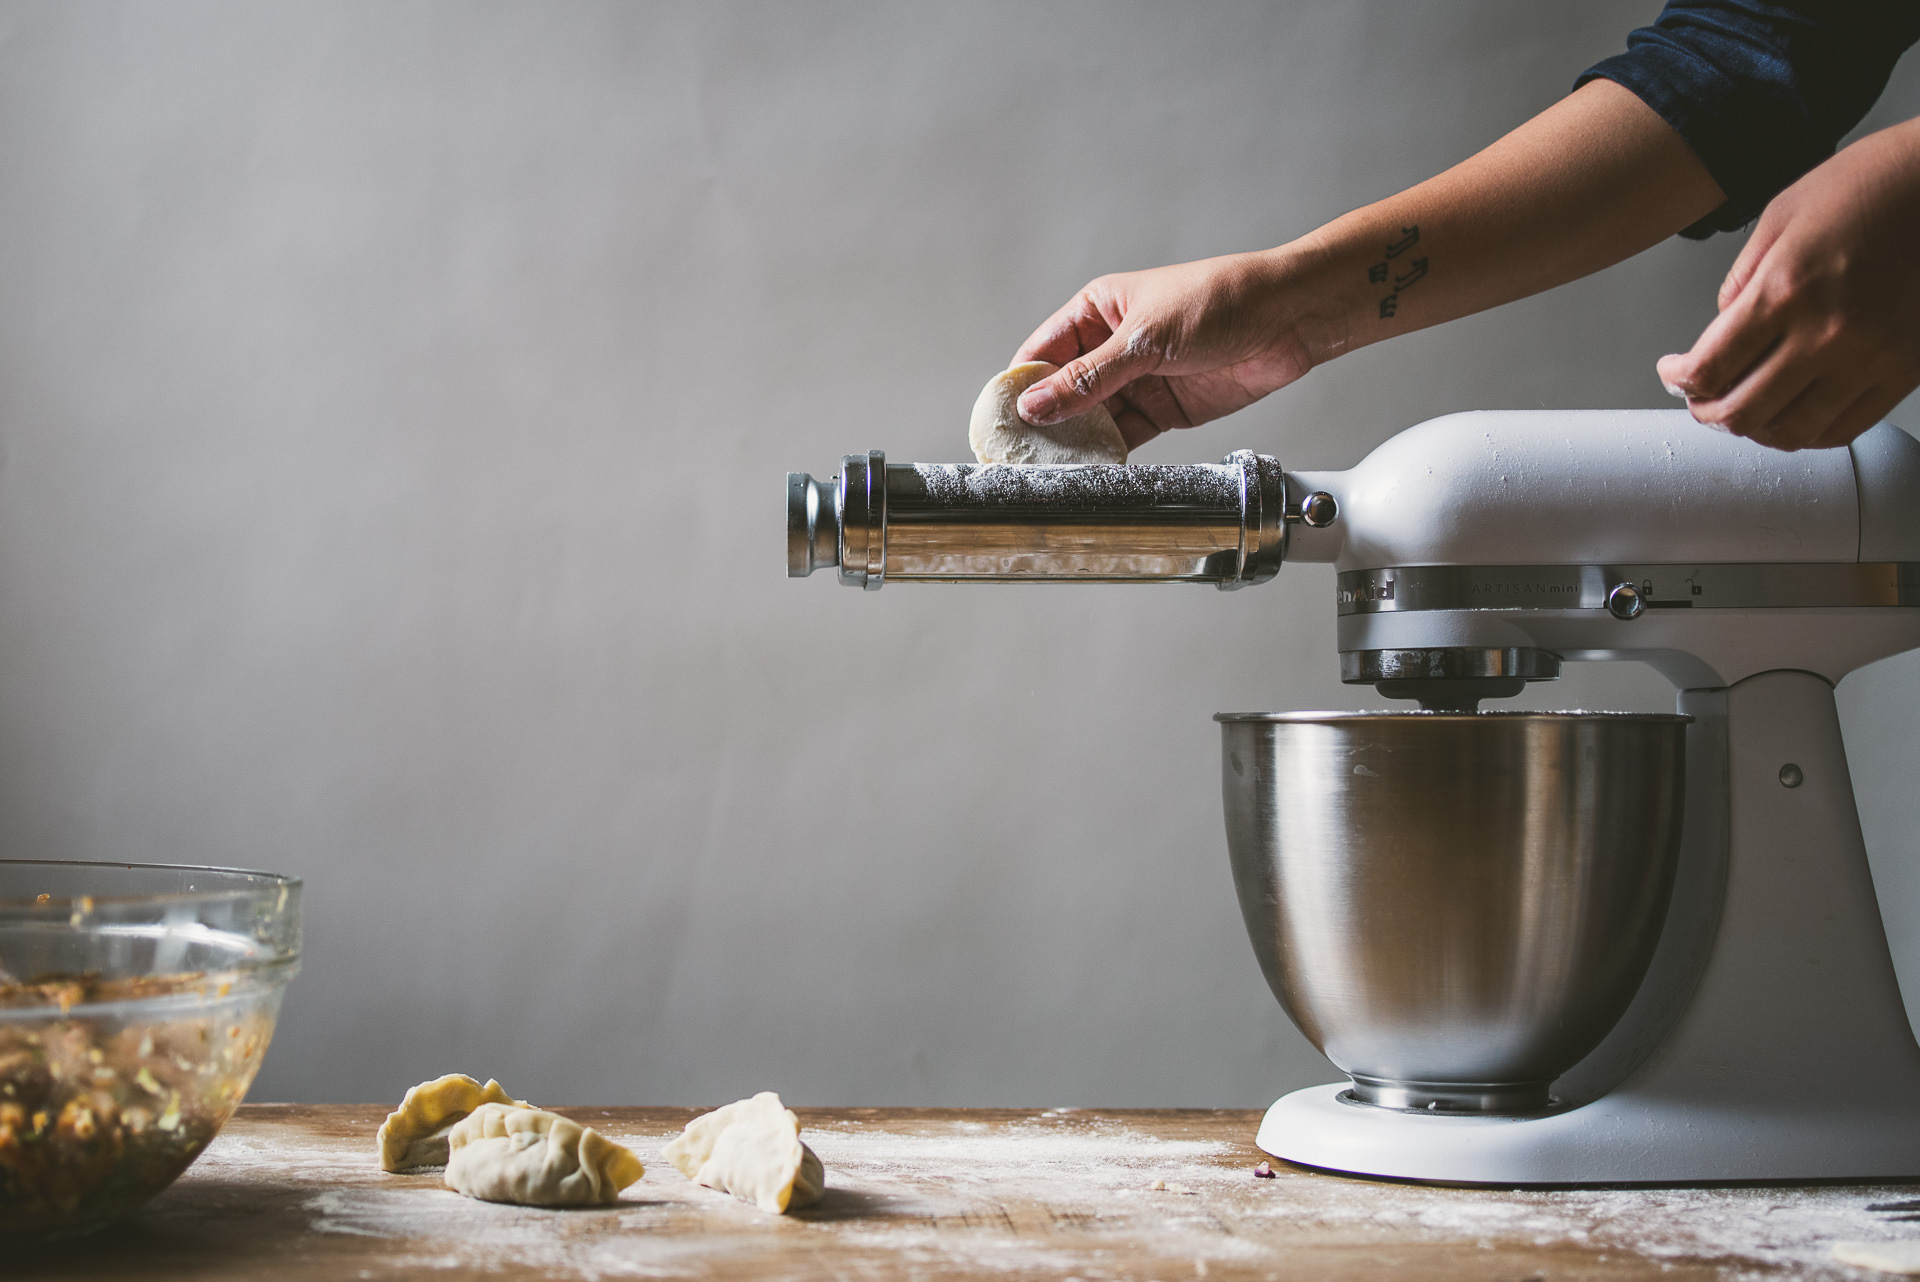 kuchysk robot kitchenaid se strojkem na tstoviny